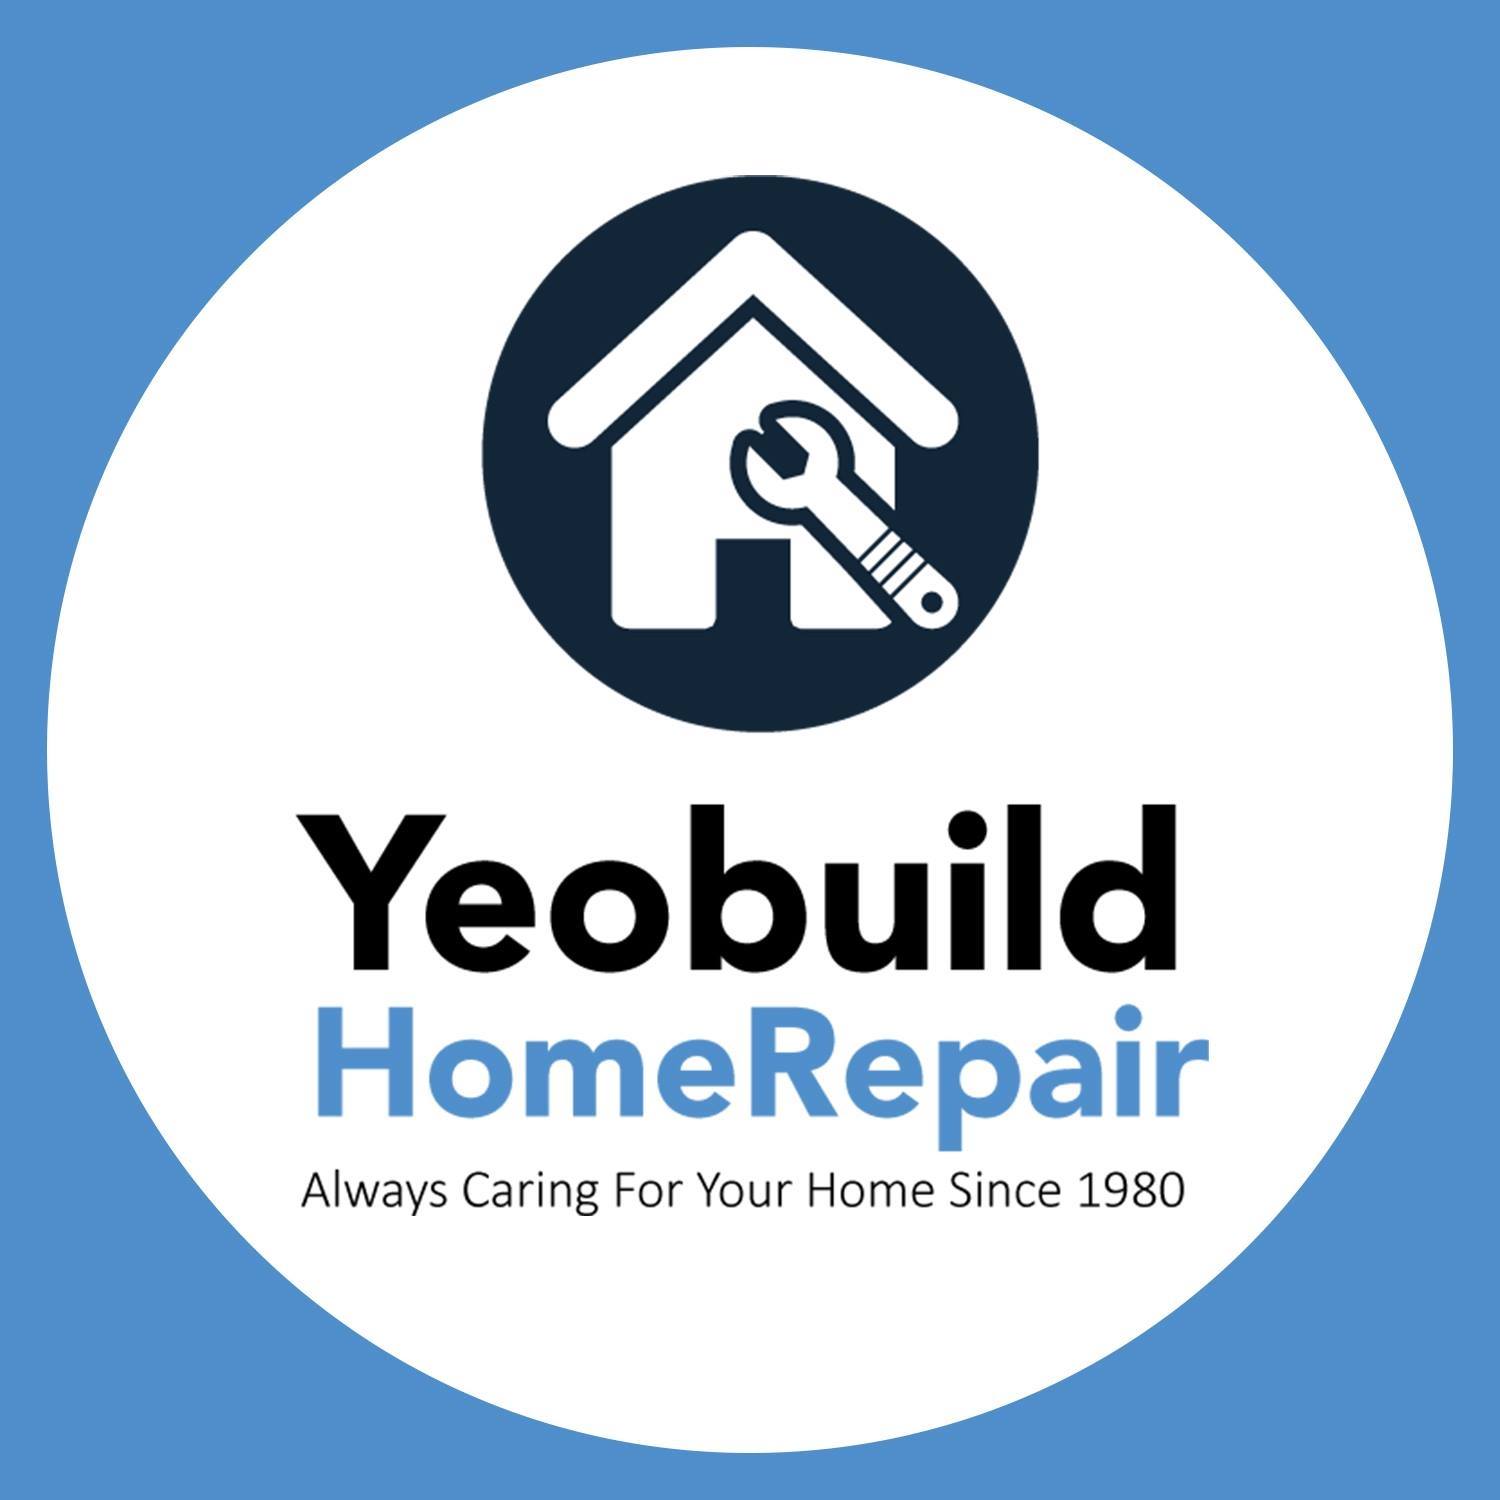 Yeobuild HomeRepair